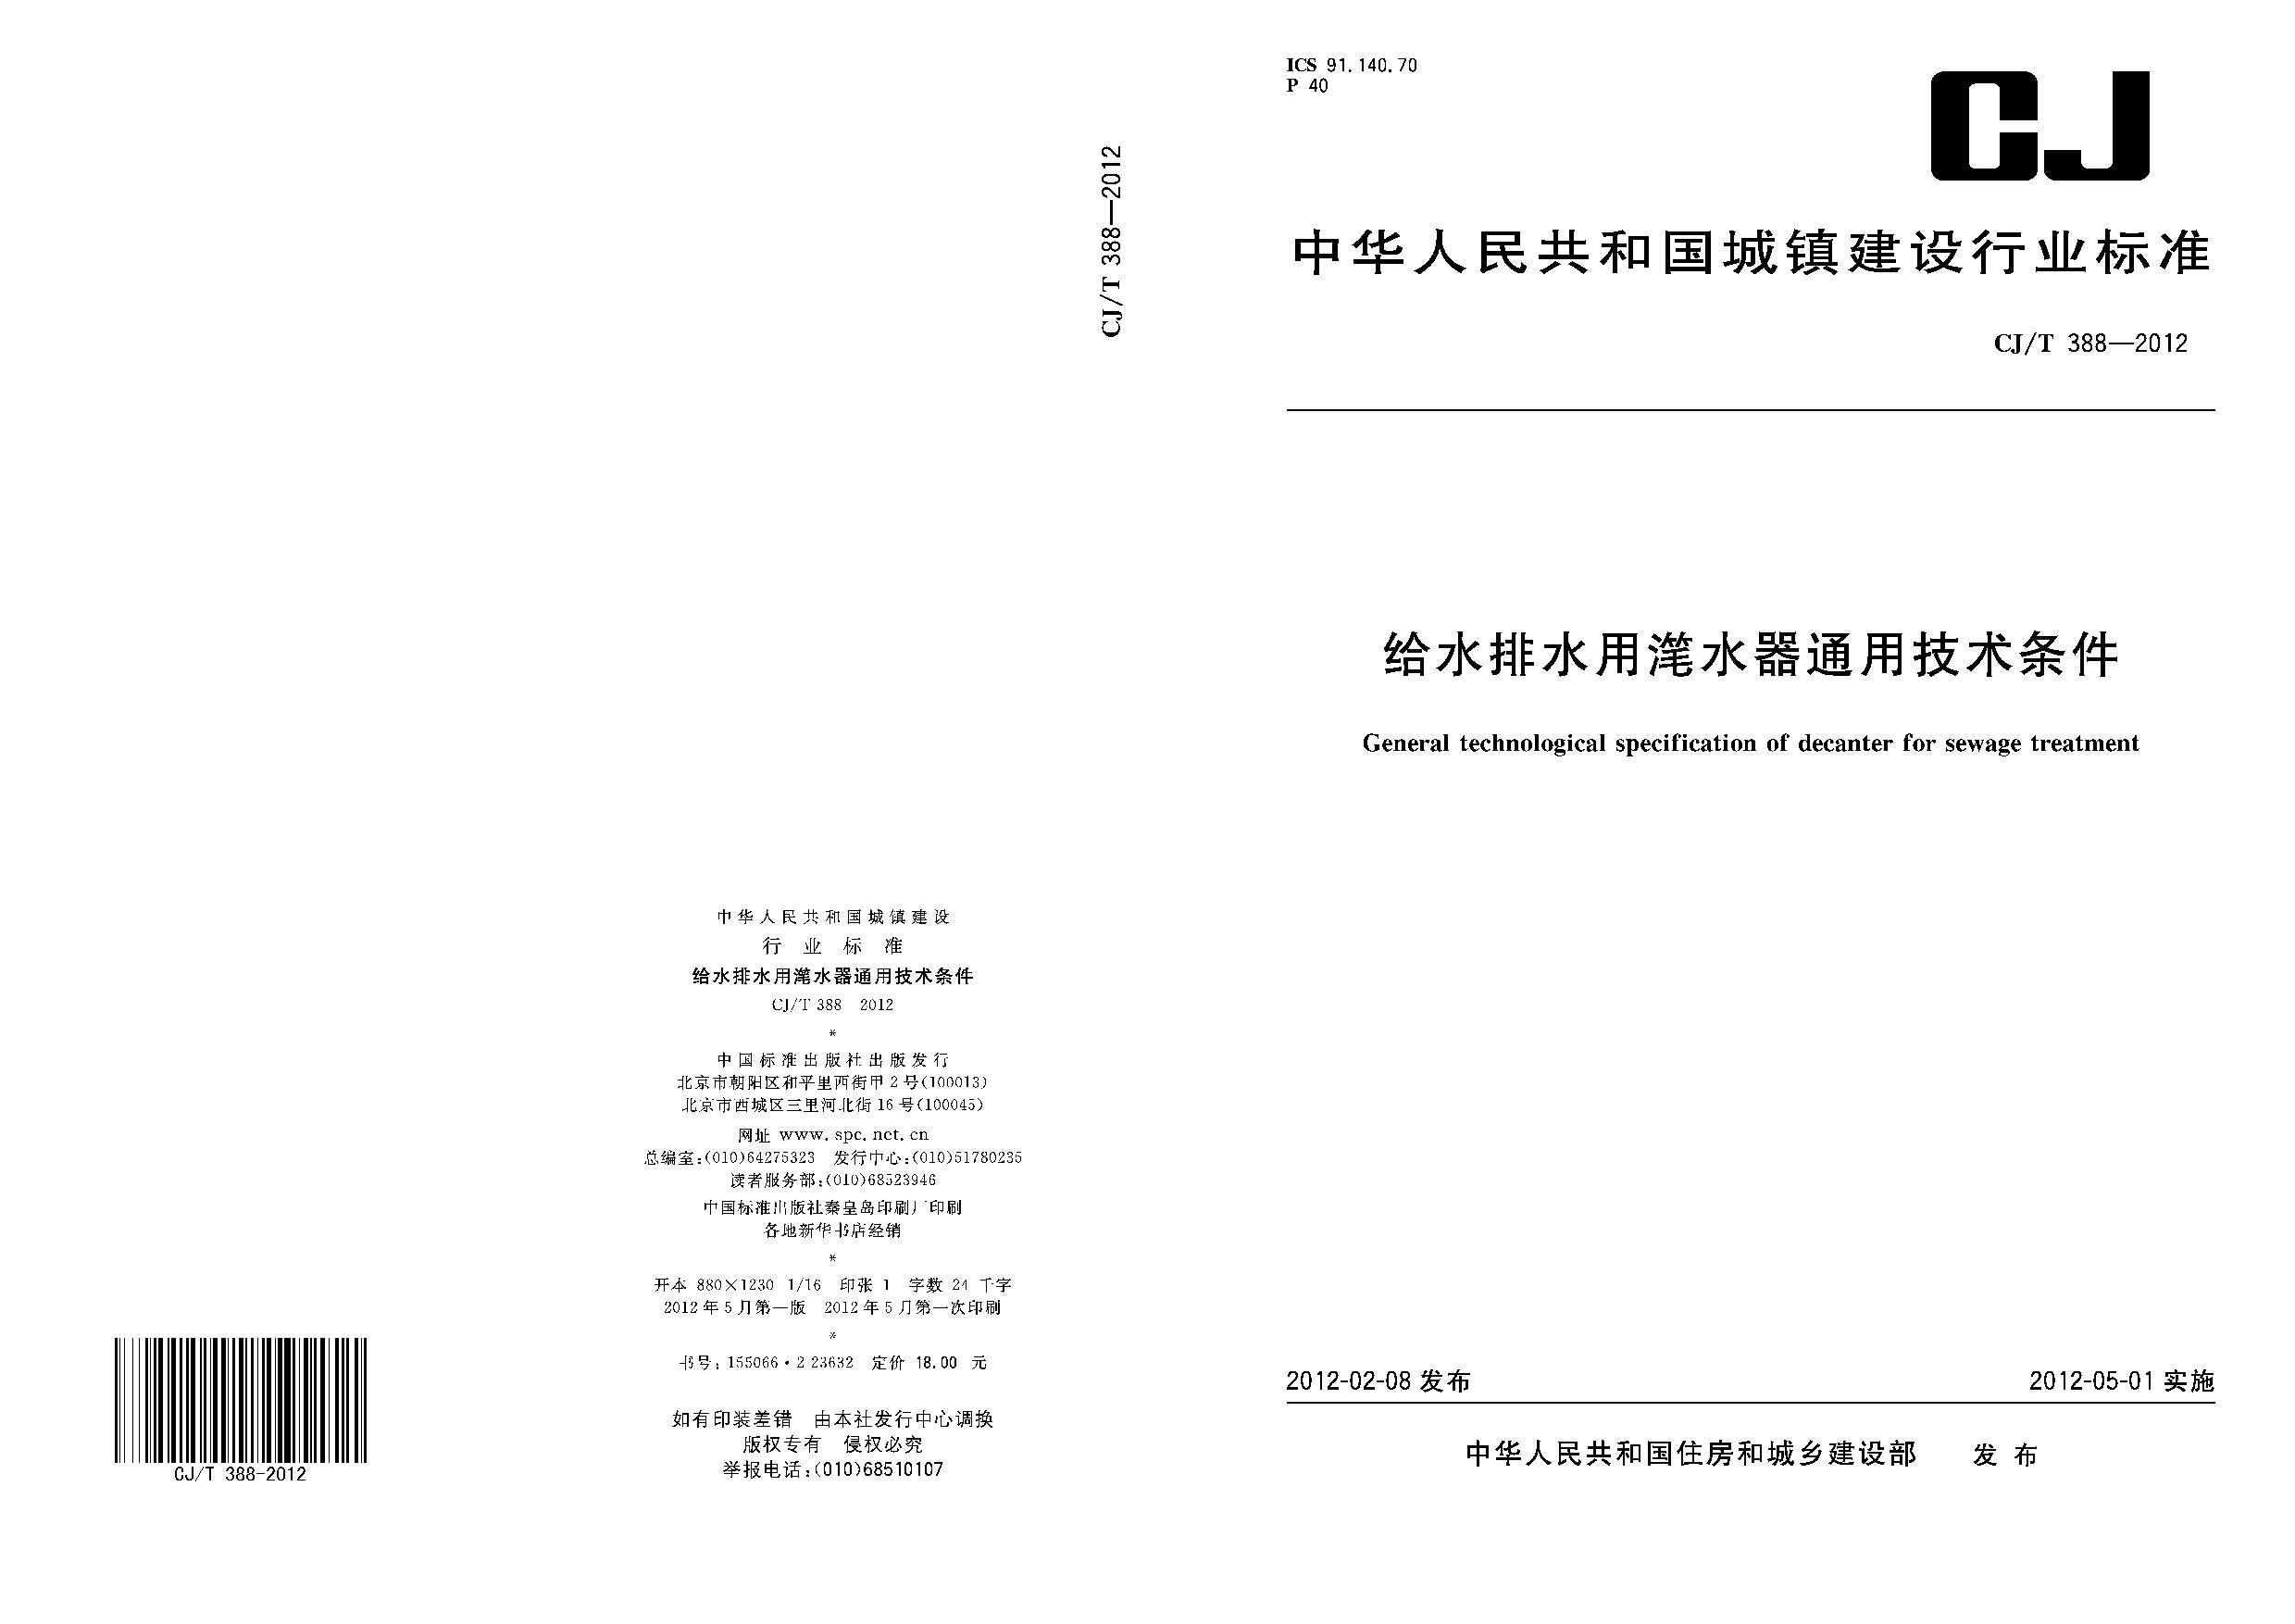 CJ/T 388-2012封面图